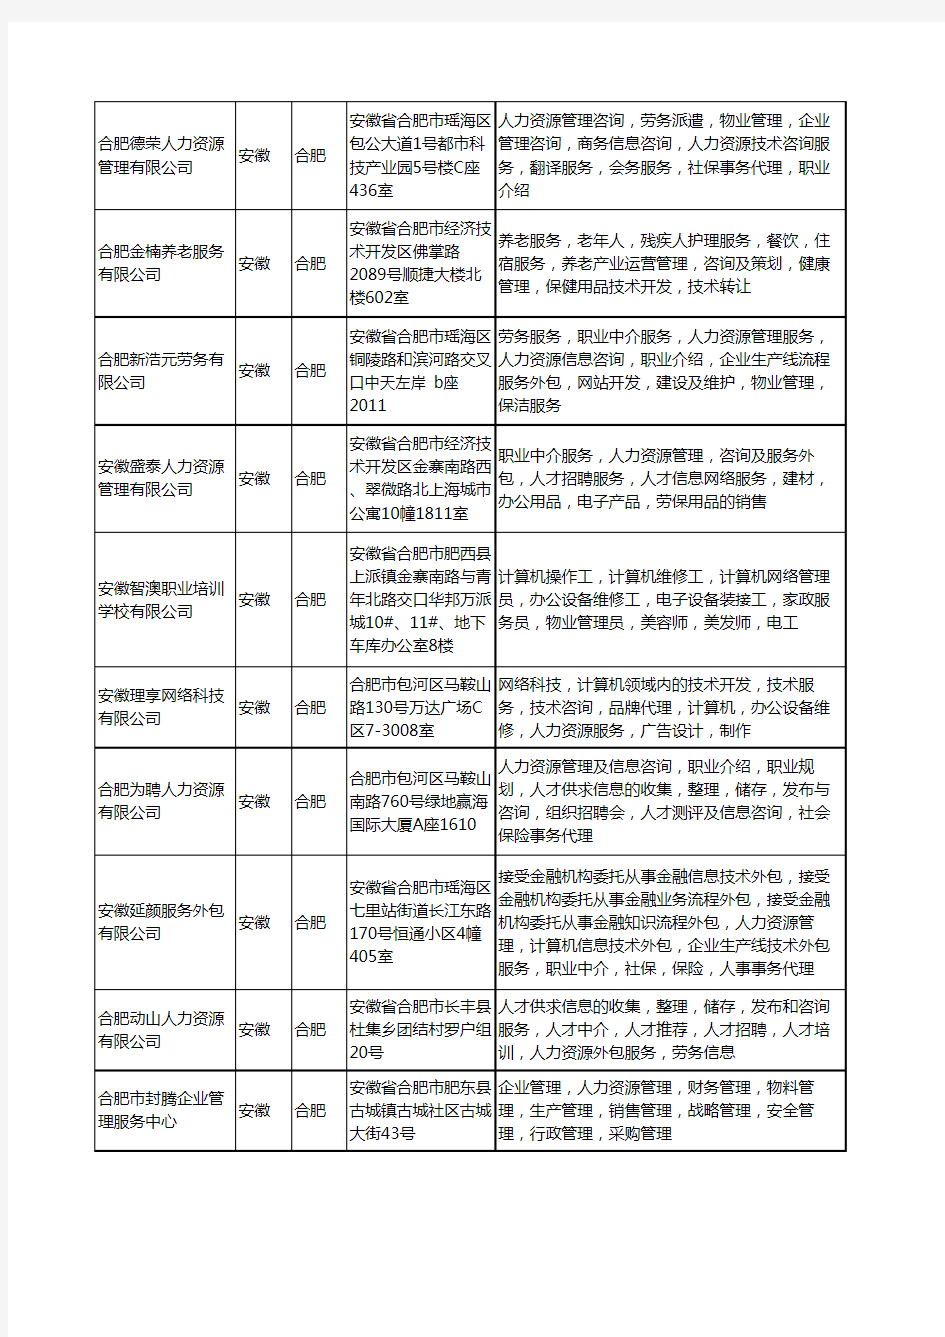 新版安徽省合肥人力资源外包服务工商企业公司商家名录名单联系方式大全352家